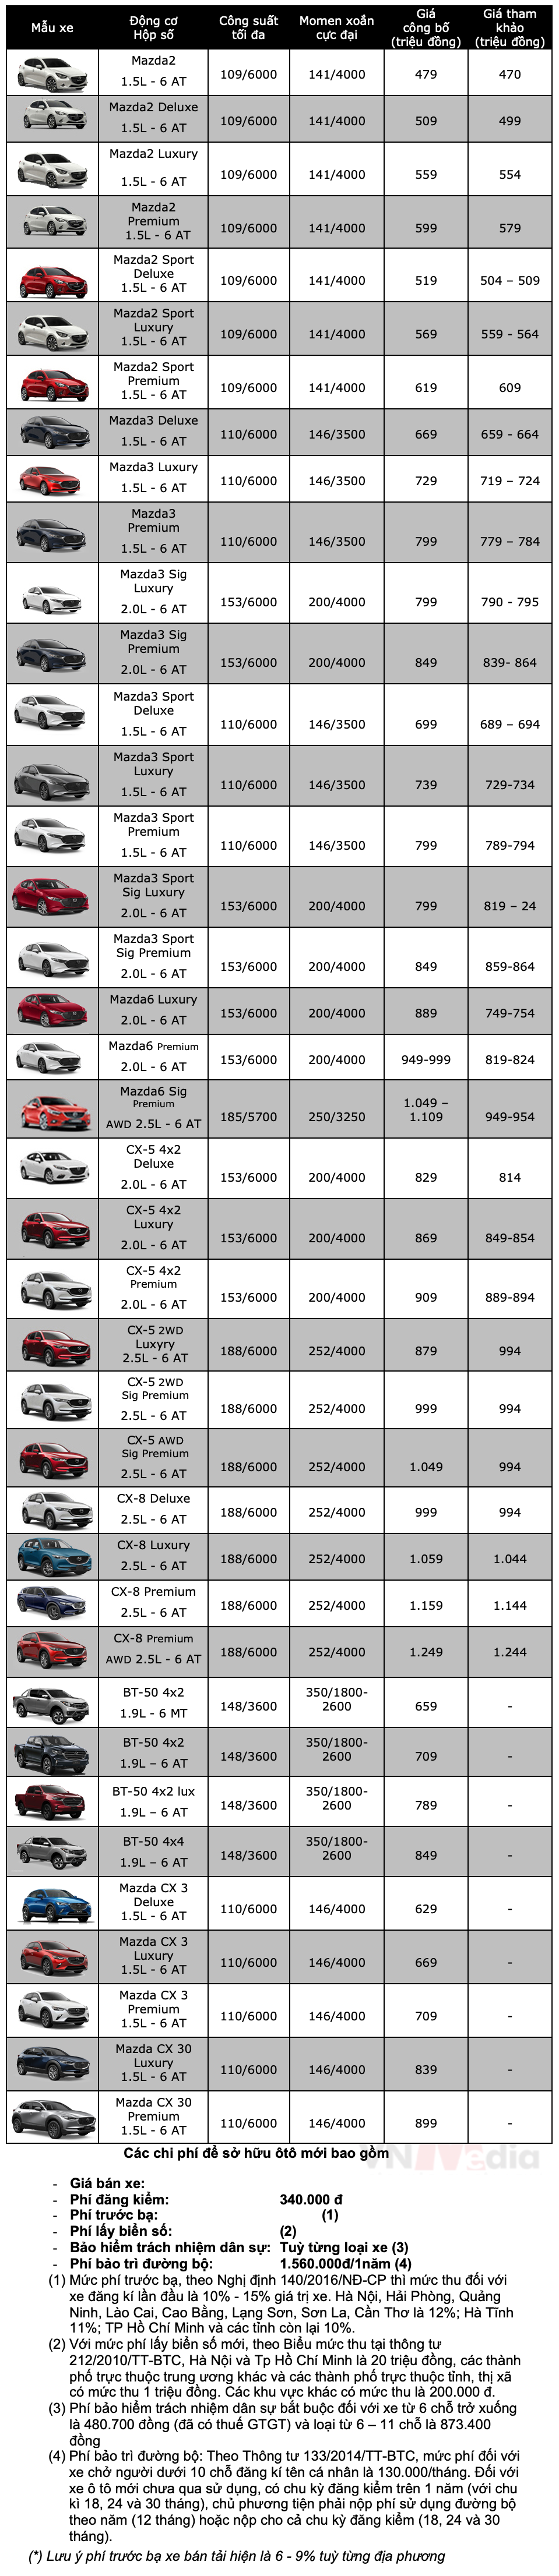 Bảng giá xe Mazda tháng 1: Mazda BT-50 tặng 100% lệ phí trước bạ lên tới hơn 60 triệu đồng - ảnh 2